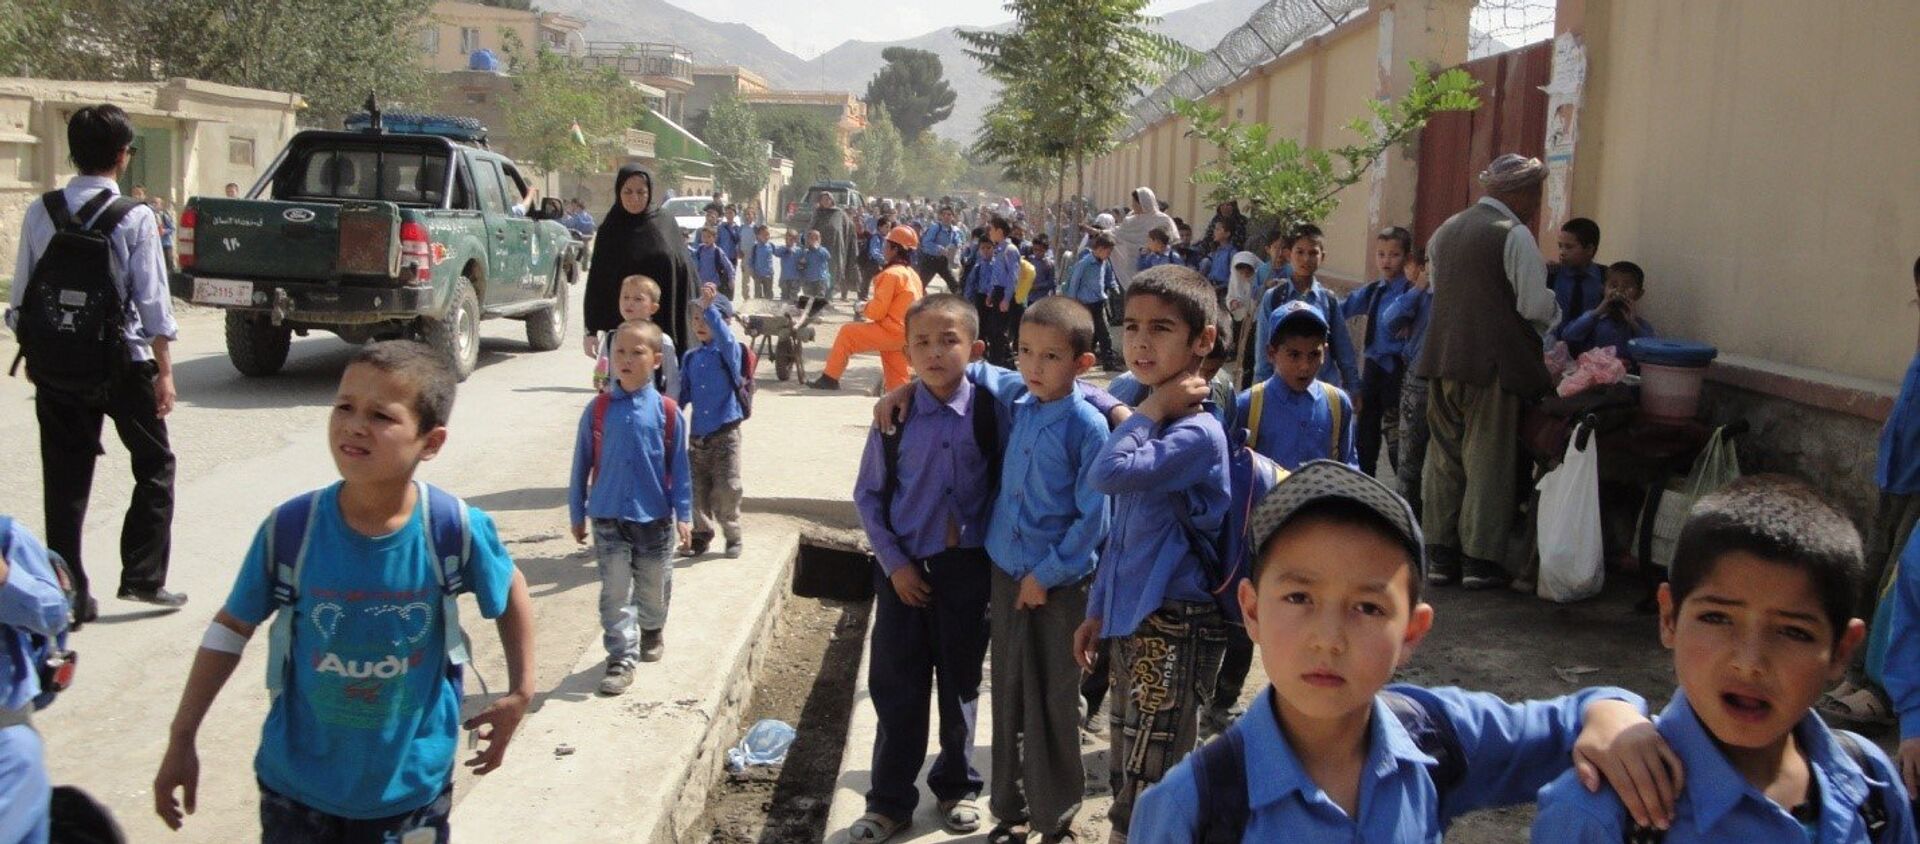  آموزگاران در شهر کابل خواهان پرداخت معاشات شان شدند - اسپوتنیک افغانستان  , 1920, 27.10.2021